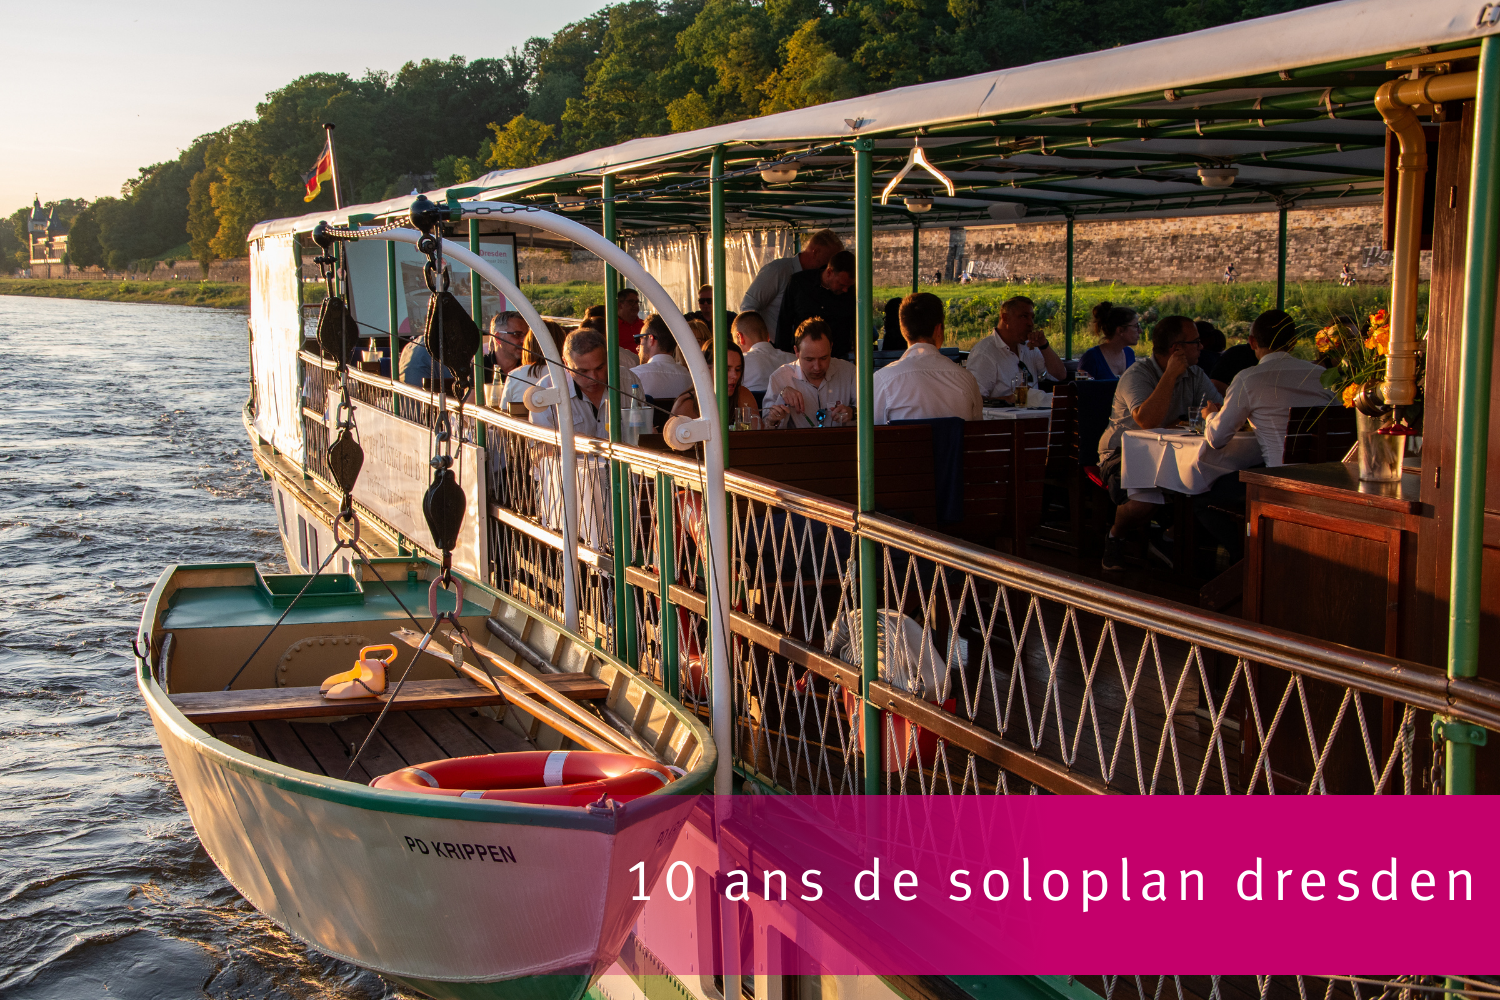 Dixième anniversaire de la succursale de Soloplan à Dresde